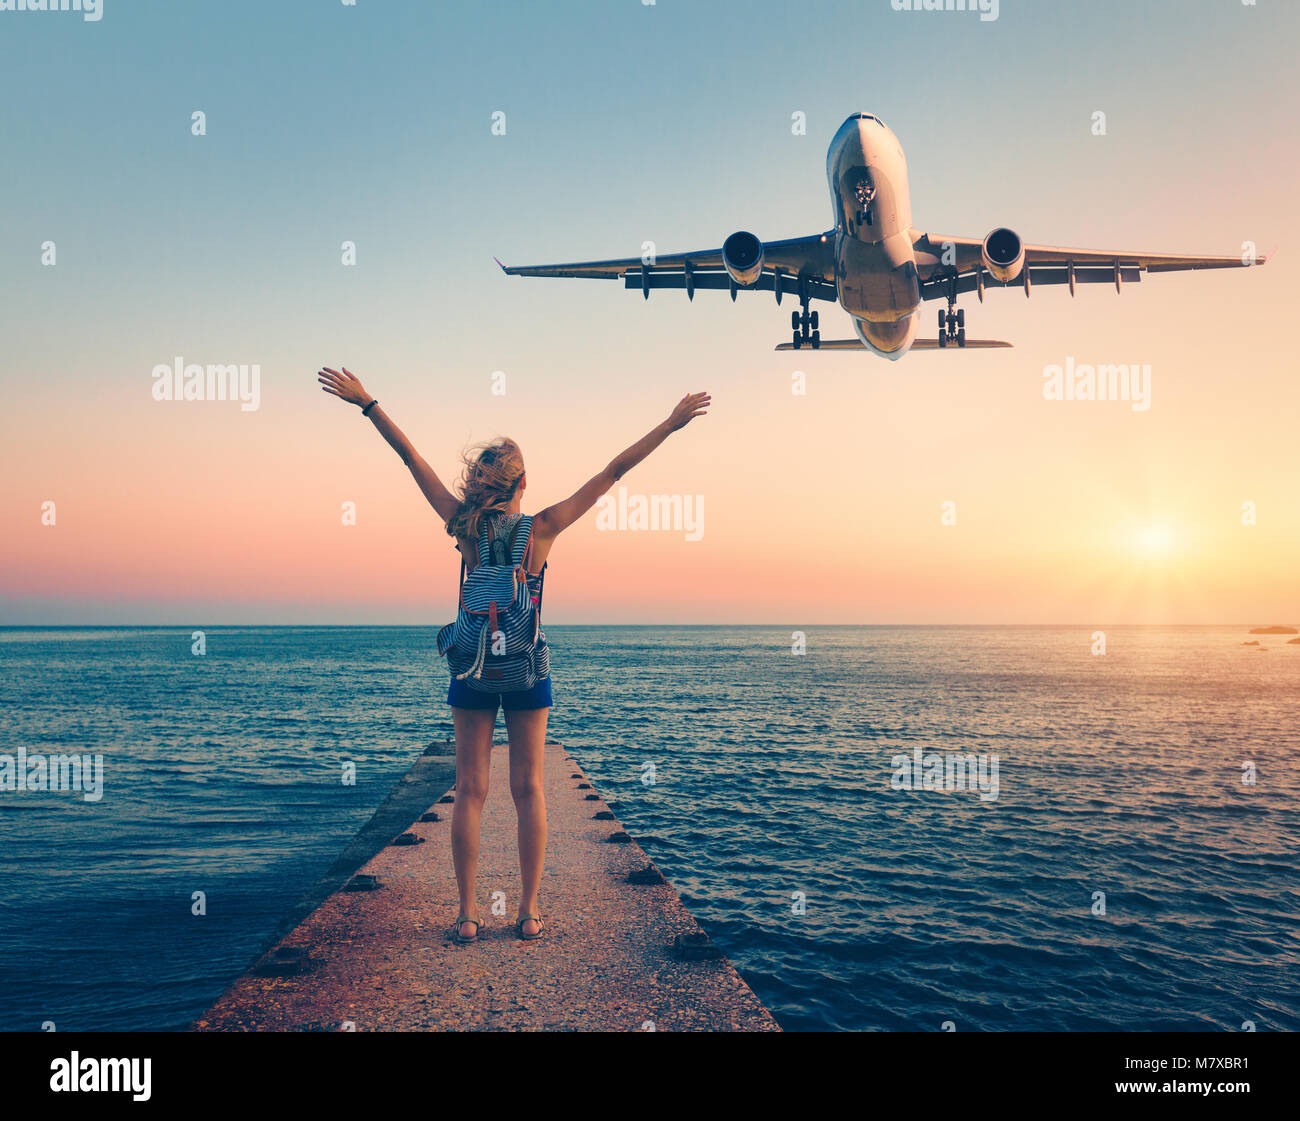 Flugzeug und Frau bei Sonnenuntergang. Sommer Landschaft mit Mädchen, der auf dem Meer Pier mit erhobenen Armen und fliegenden Passagierflugzeugs. Frau und Landung Stockfoto